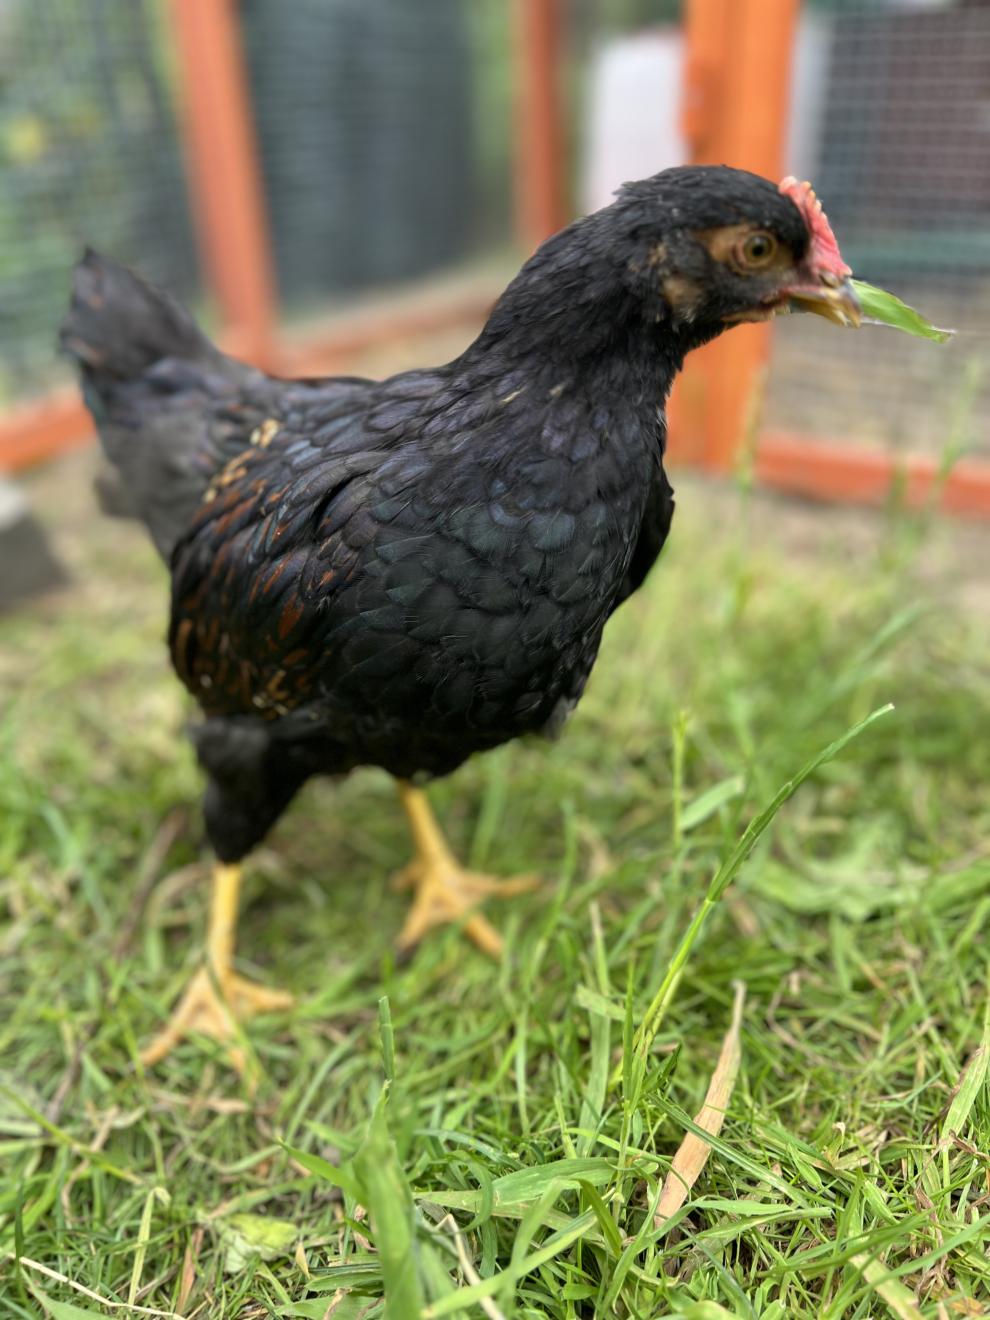 Eine Nahaufnahme eines schwarzen Huhns, das im Gras steht. Das Huhn hat gelbe Beine und hält ein Stück grünes Blatt in seinem Schnabel. Im Hintergrund ist eine unscharfe Ansicht des Hühnerstalls mit orangefarbenem Rahmen und Drahtgeflecht zu sehen.